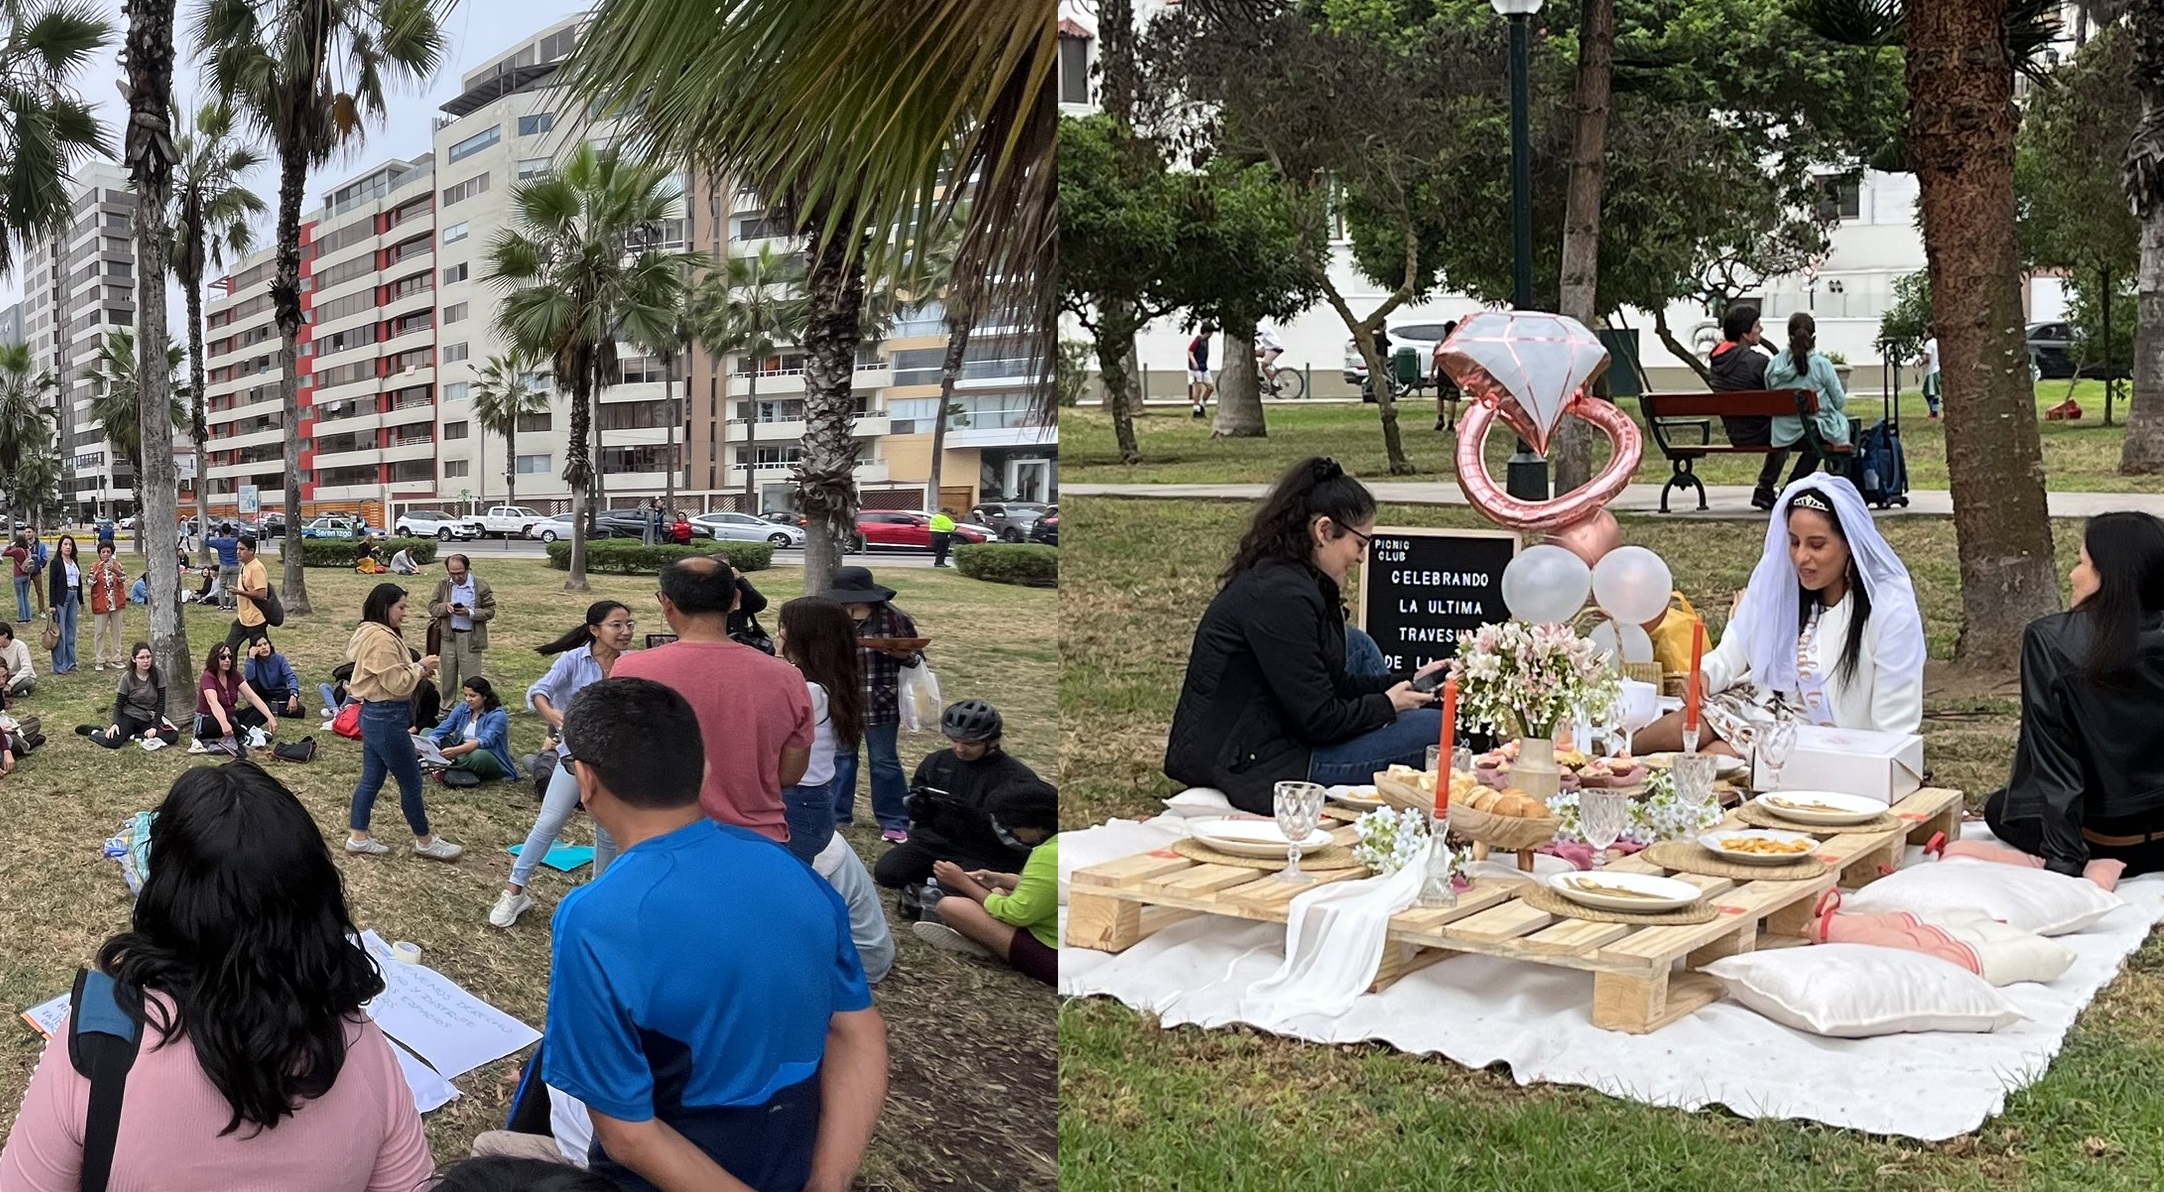 Despedida de soltera, taichí y más en picnic masivo contra restricciones municipales en Miraflores 